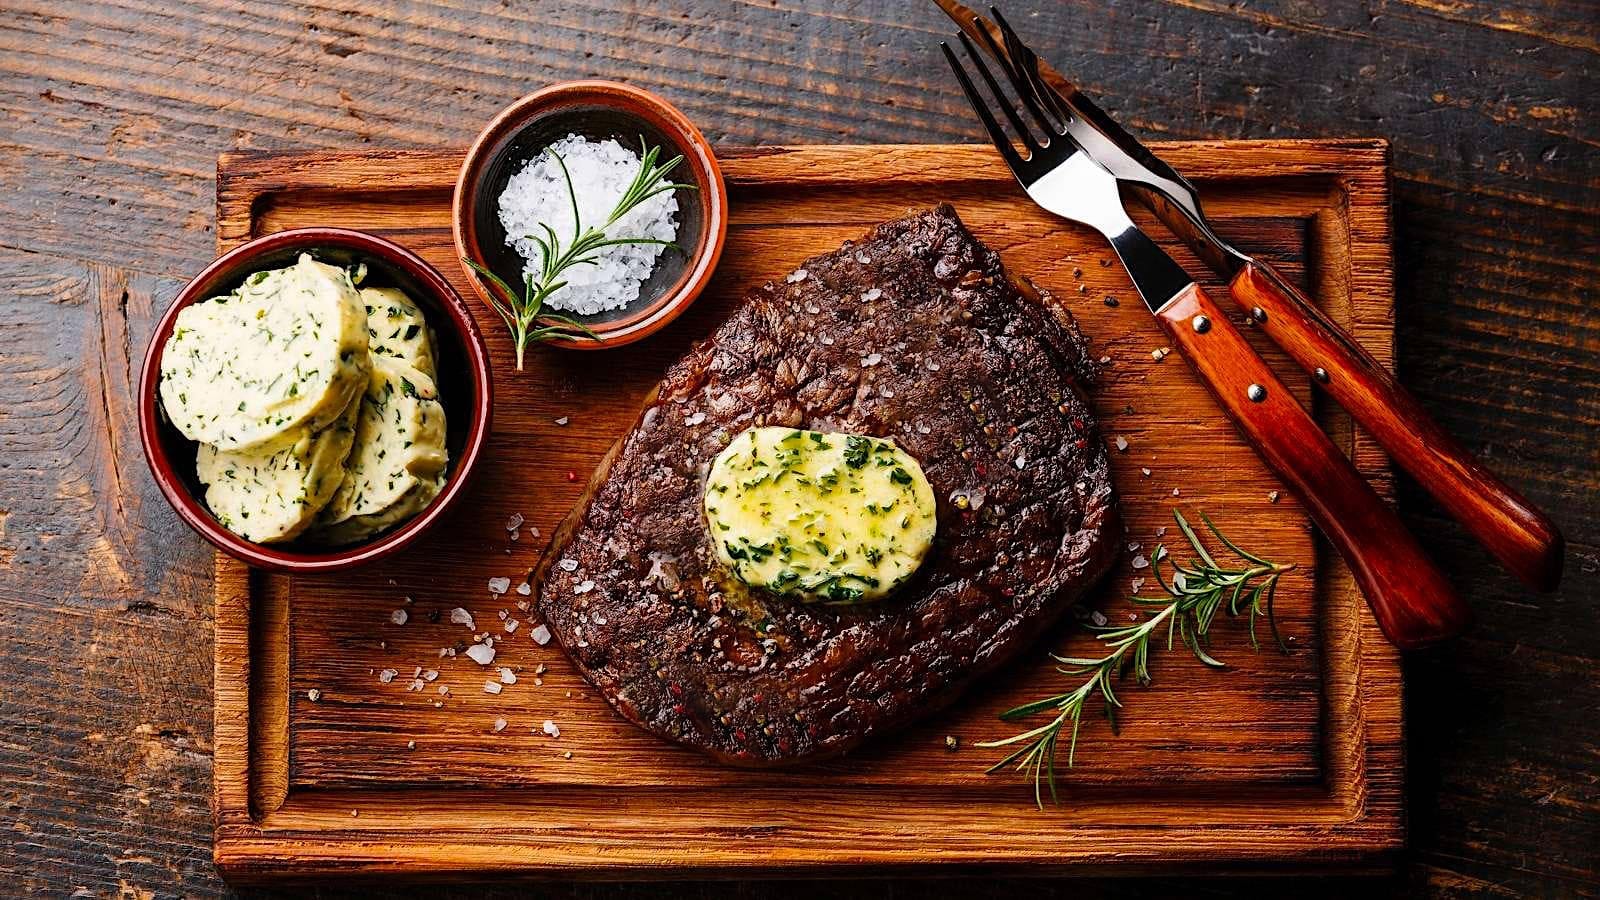 Un steak grillé au BBQ garni d'une tranche fondante de beurre composé est posé sur une planche de bois. Un bol avec quelques tranches froides de beurre composé y est posé, avec un ramequin de gros sel et une paire d'ustensile.